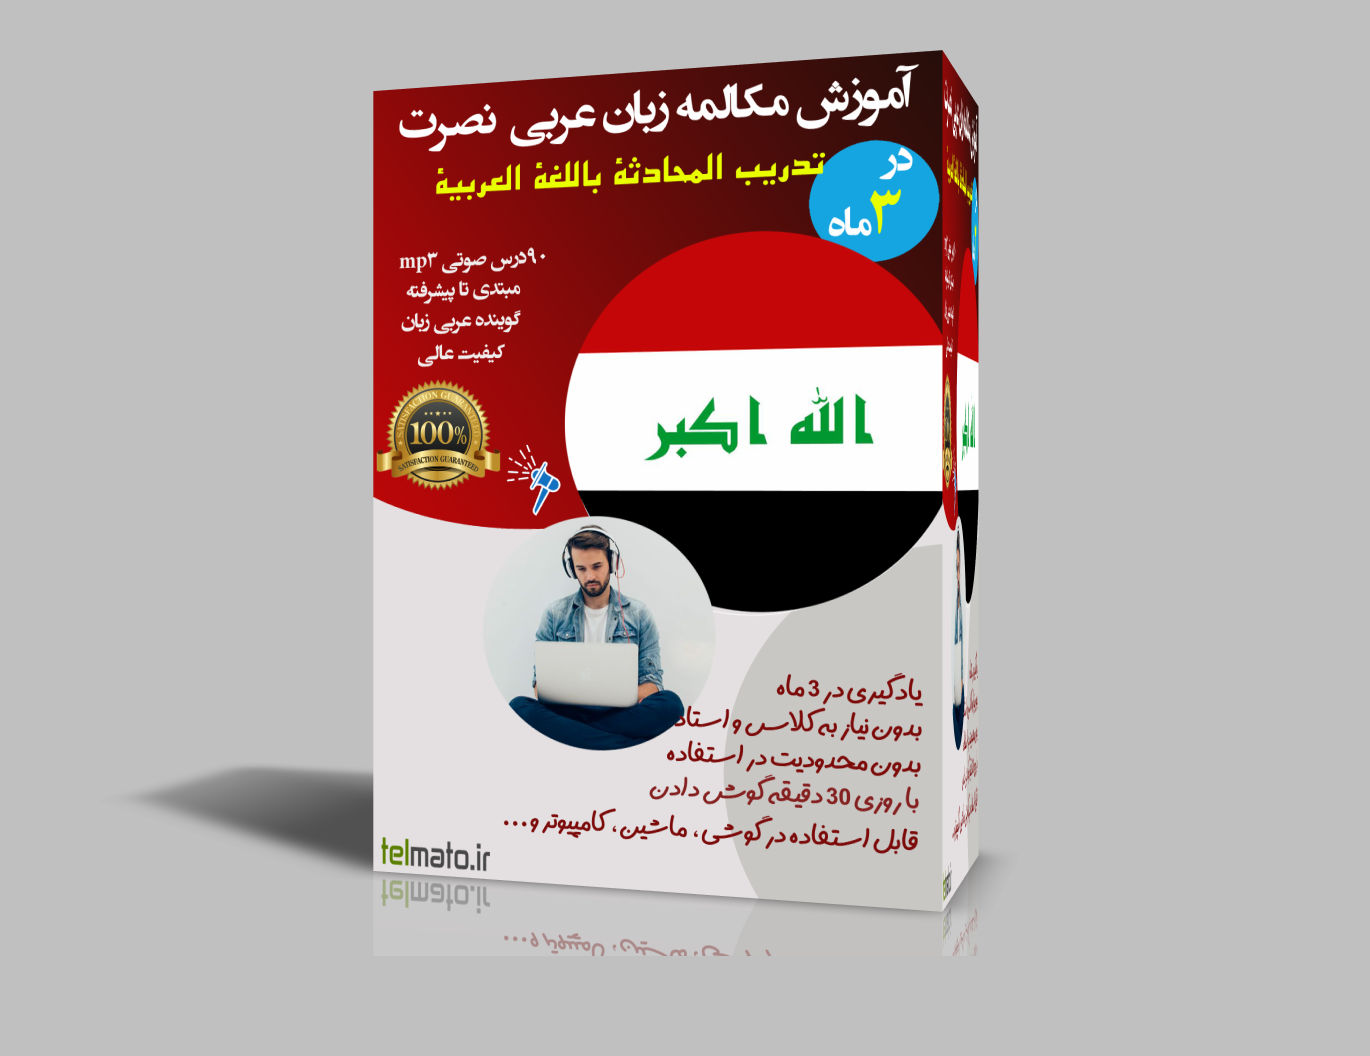 دانلود آموزش مکالمه زبان عربی به روش نصرت در 3 ماه با فایل صوتی MP3 | یادگیری از پایه تا پیشرفته